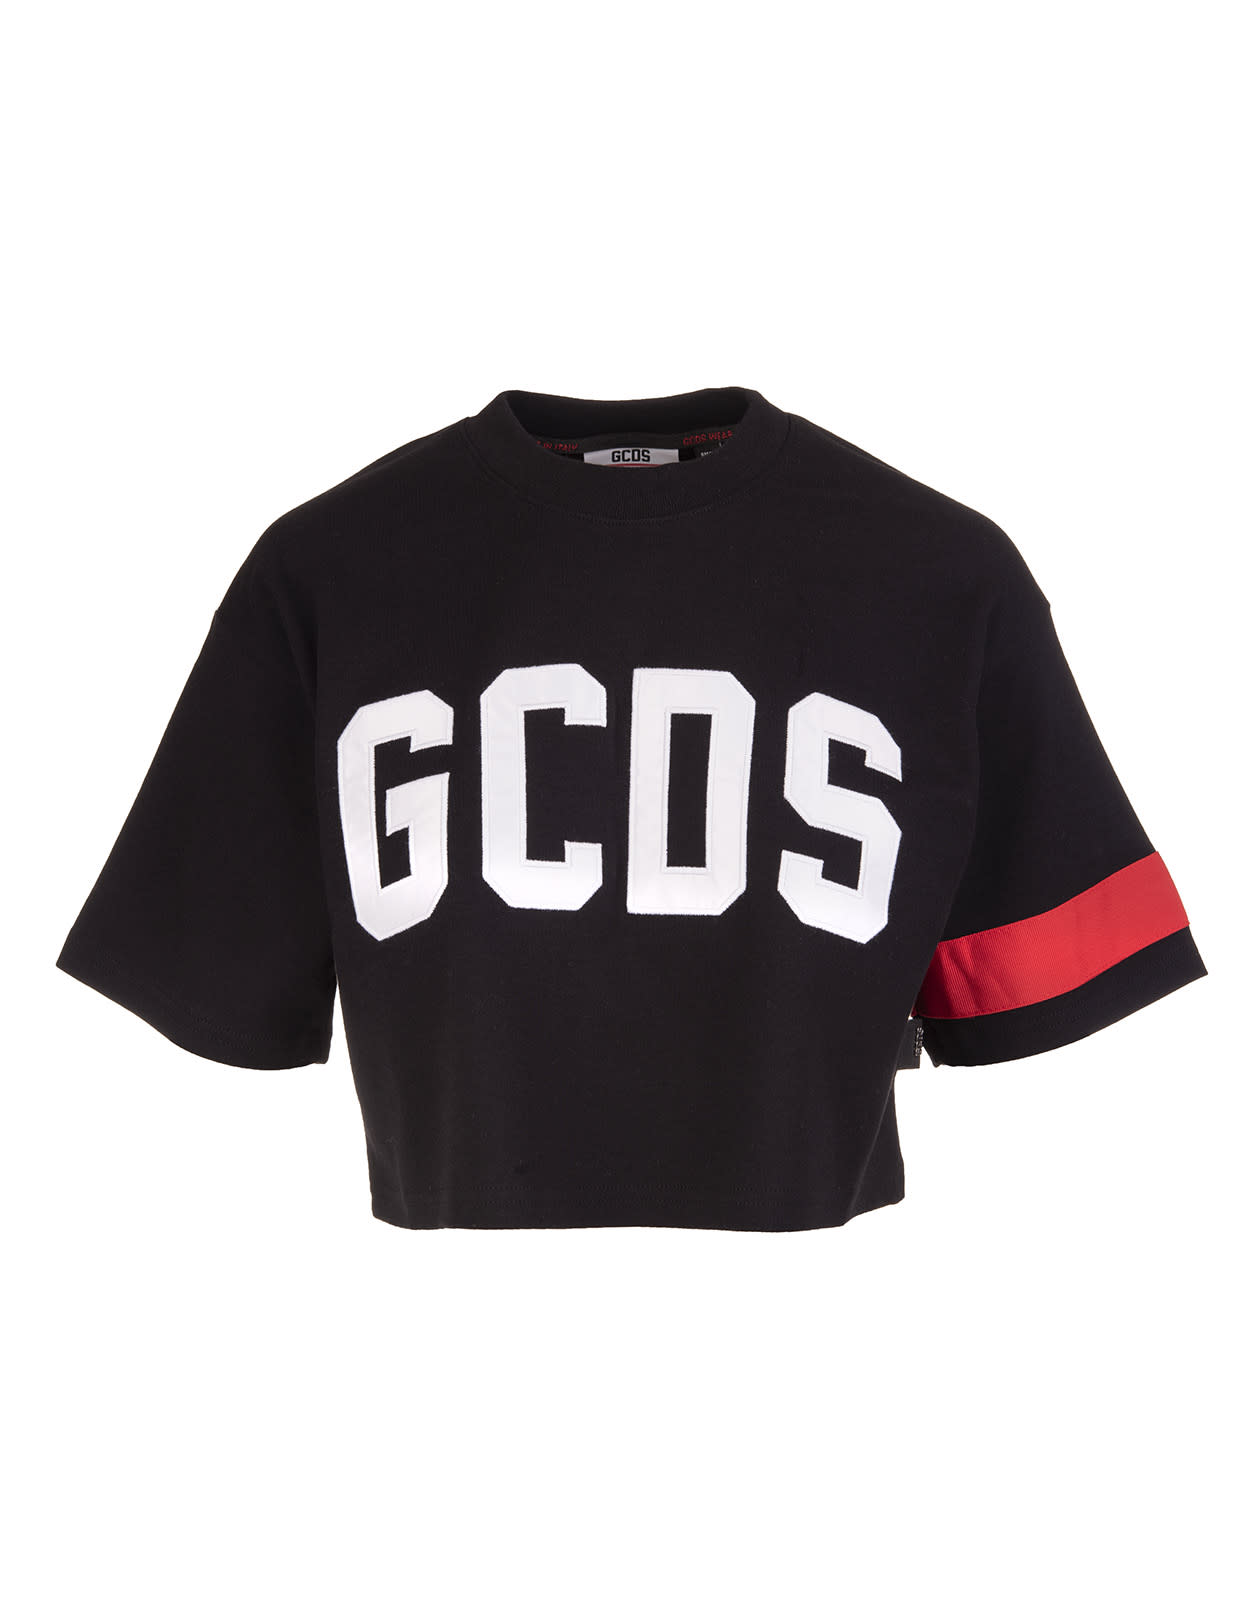 GCDS Woman Black Cropped T-shirt With White Logo